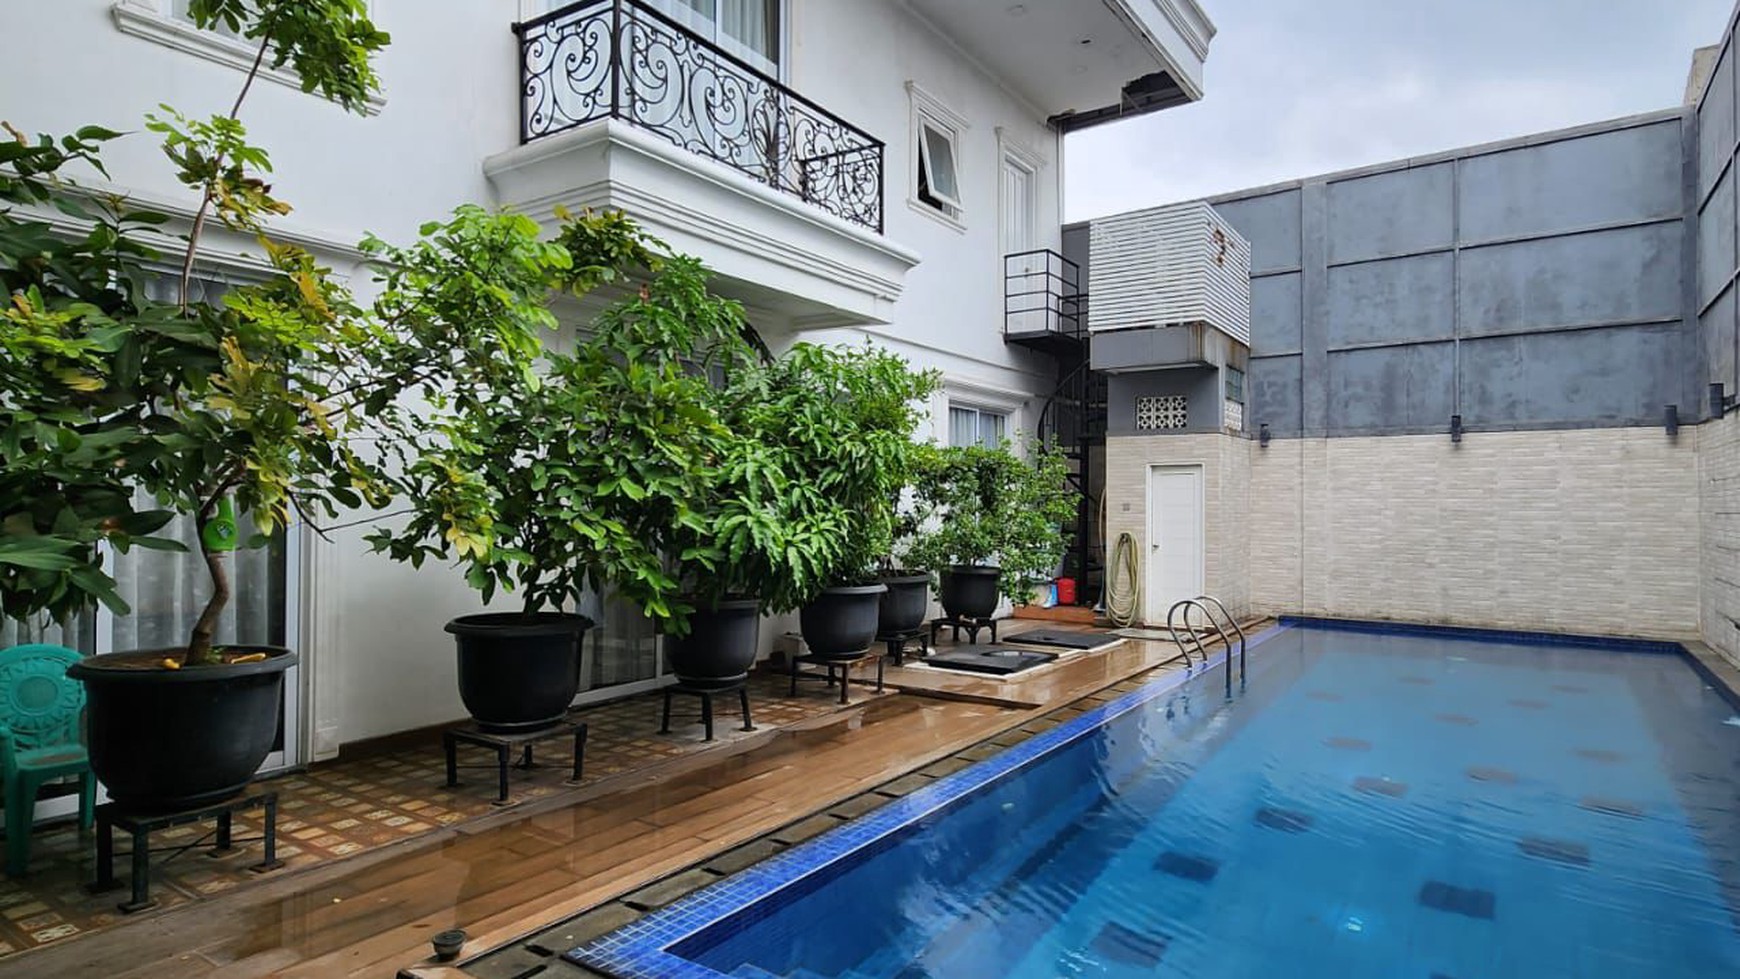 Rumah Bagus Di Jl Raya Parigi Pondok Aren Tangerang Selatan